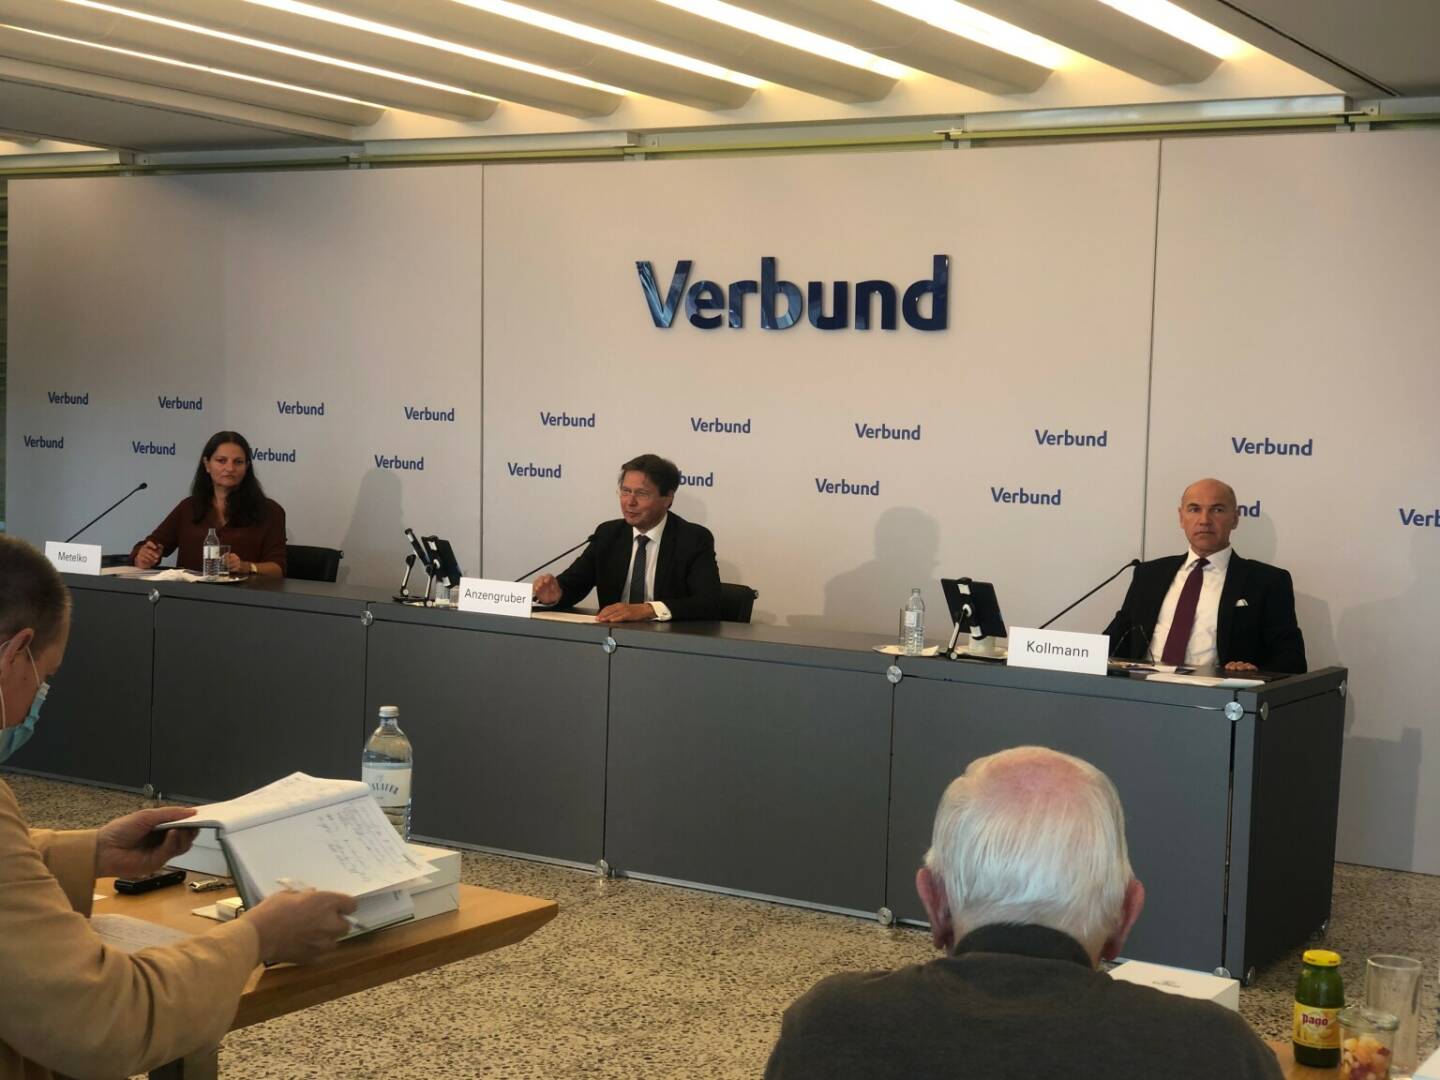 Verbund-Halbjahres-PK, 30. Juli 2020, Sprecherin Ingun Metelko, CEO Wolfgang Anzengruber, CFO Peter Kollmann